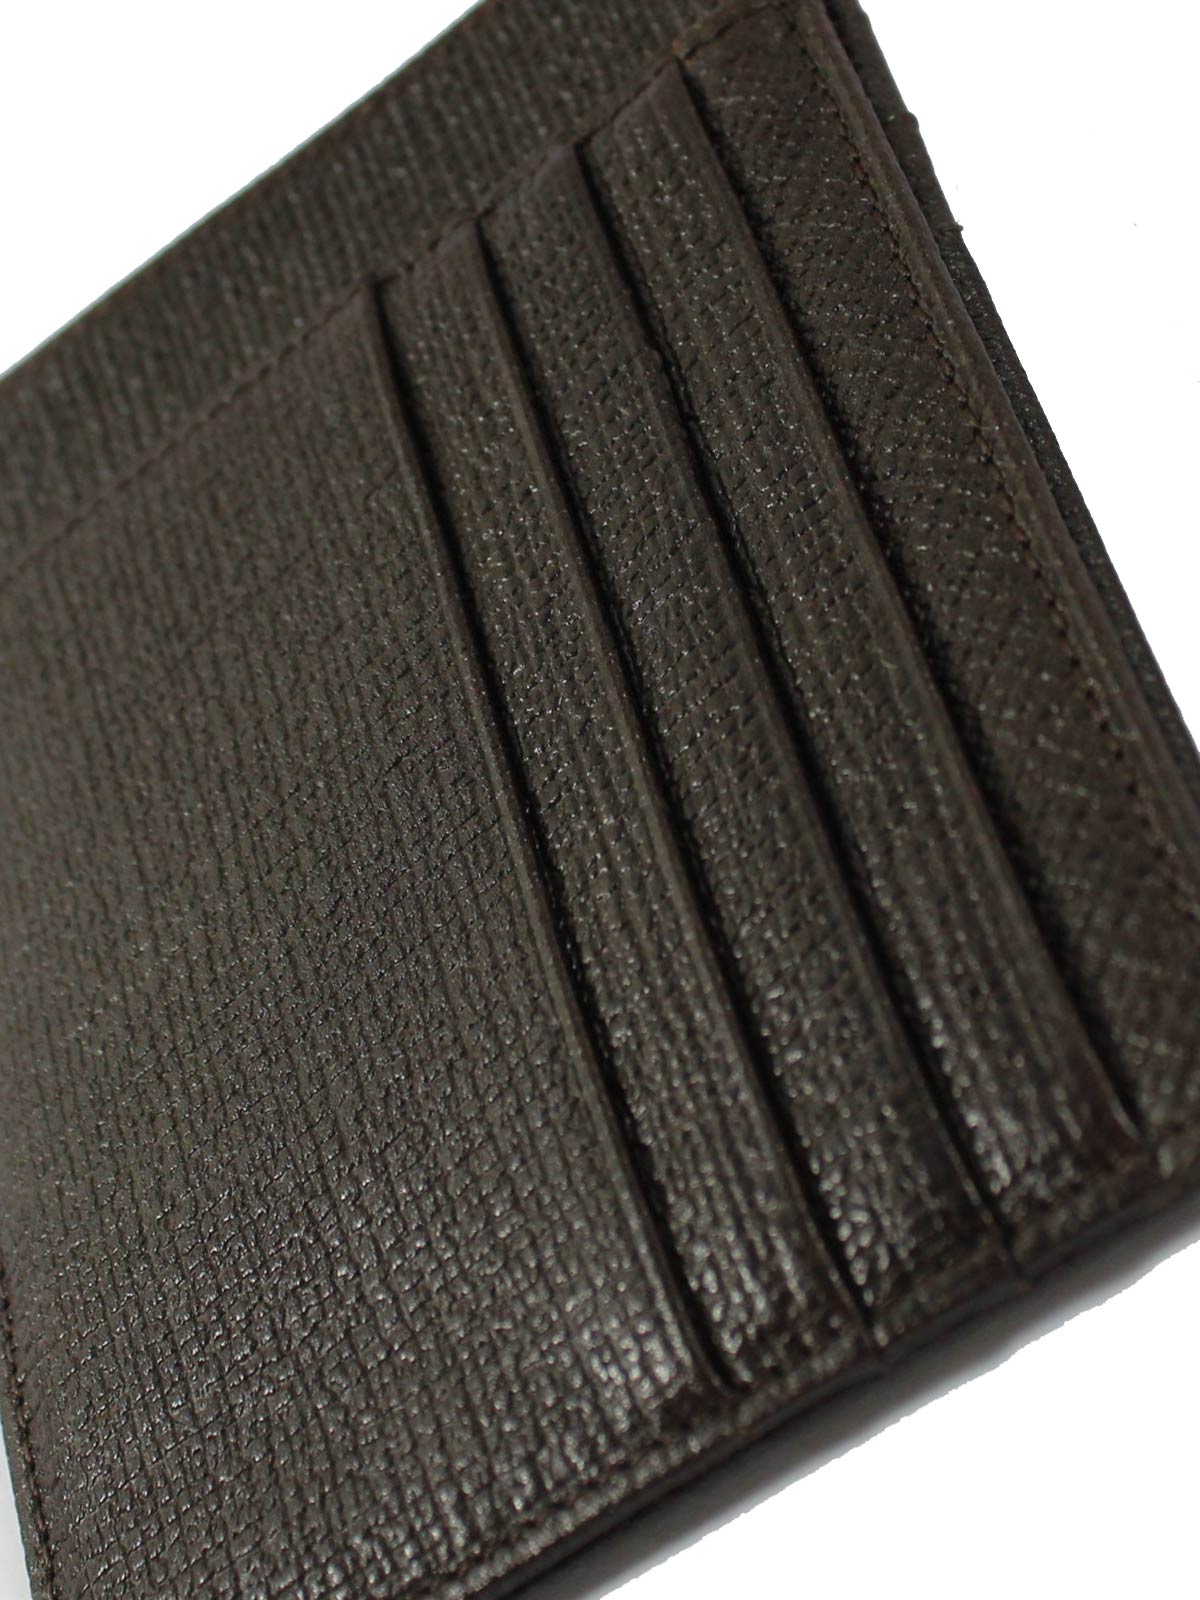 Kiton Wallet - Dark Brown Grain Leather Men Wallet Credit Card Holder - Tie  Deals